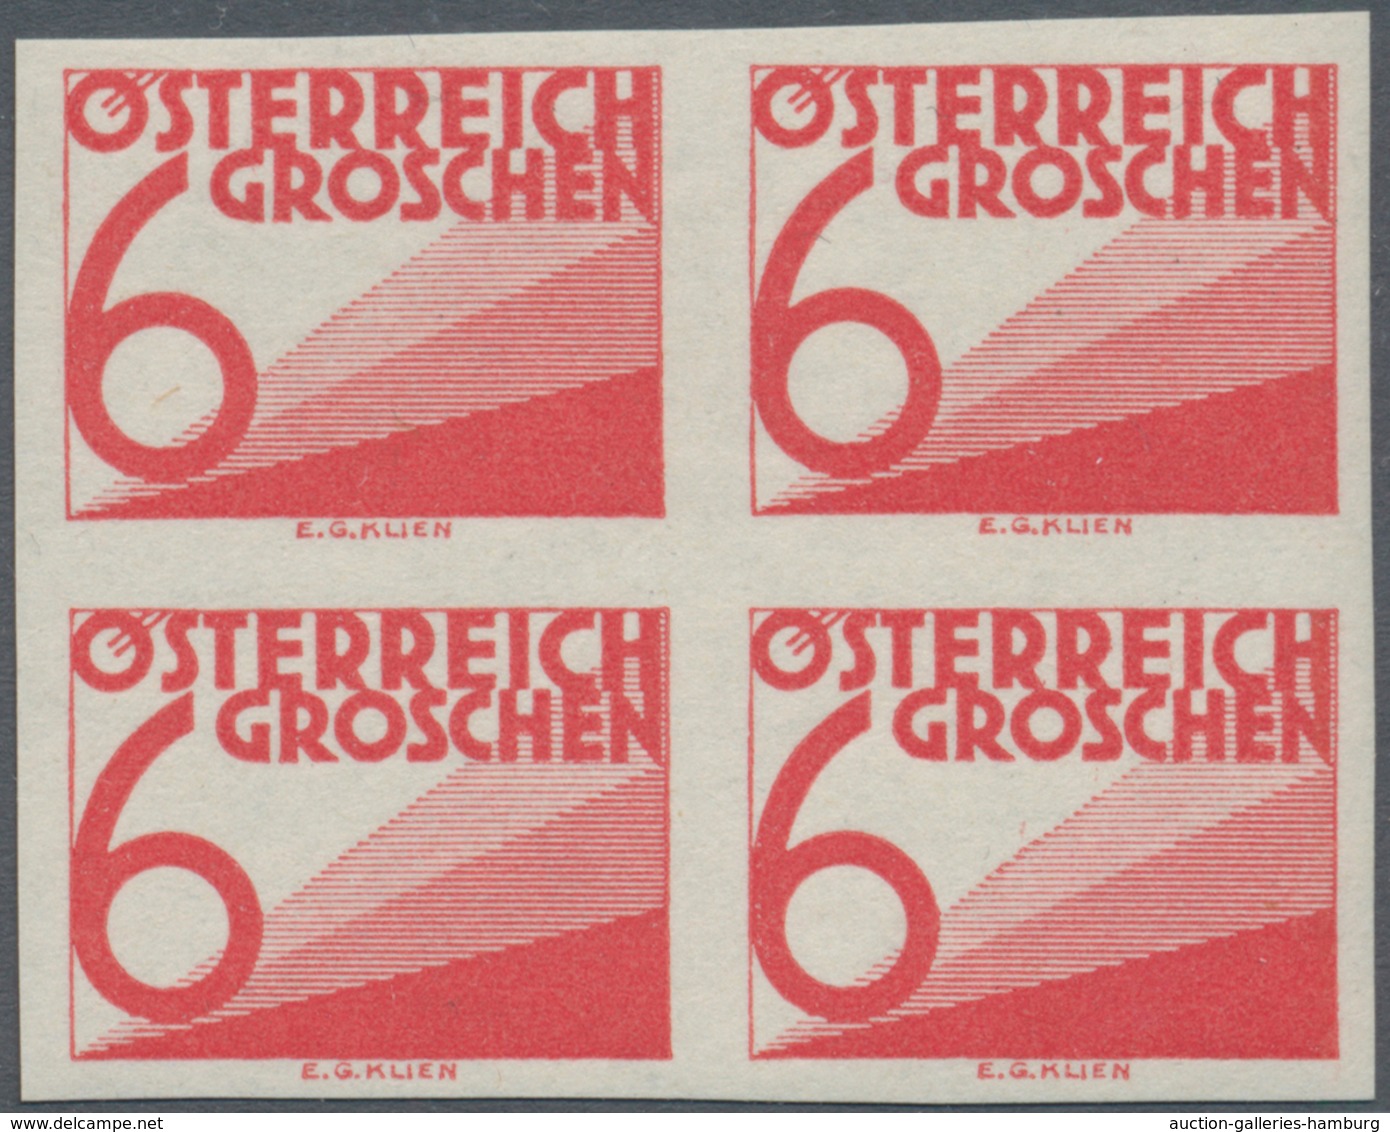 Österreich - Portomarken: 1925, Ziffern 1 Gr. bis 60 Gr., 13 Werte je in ungezähnten 4er-Blocks, pos